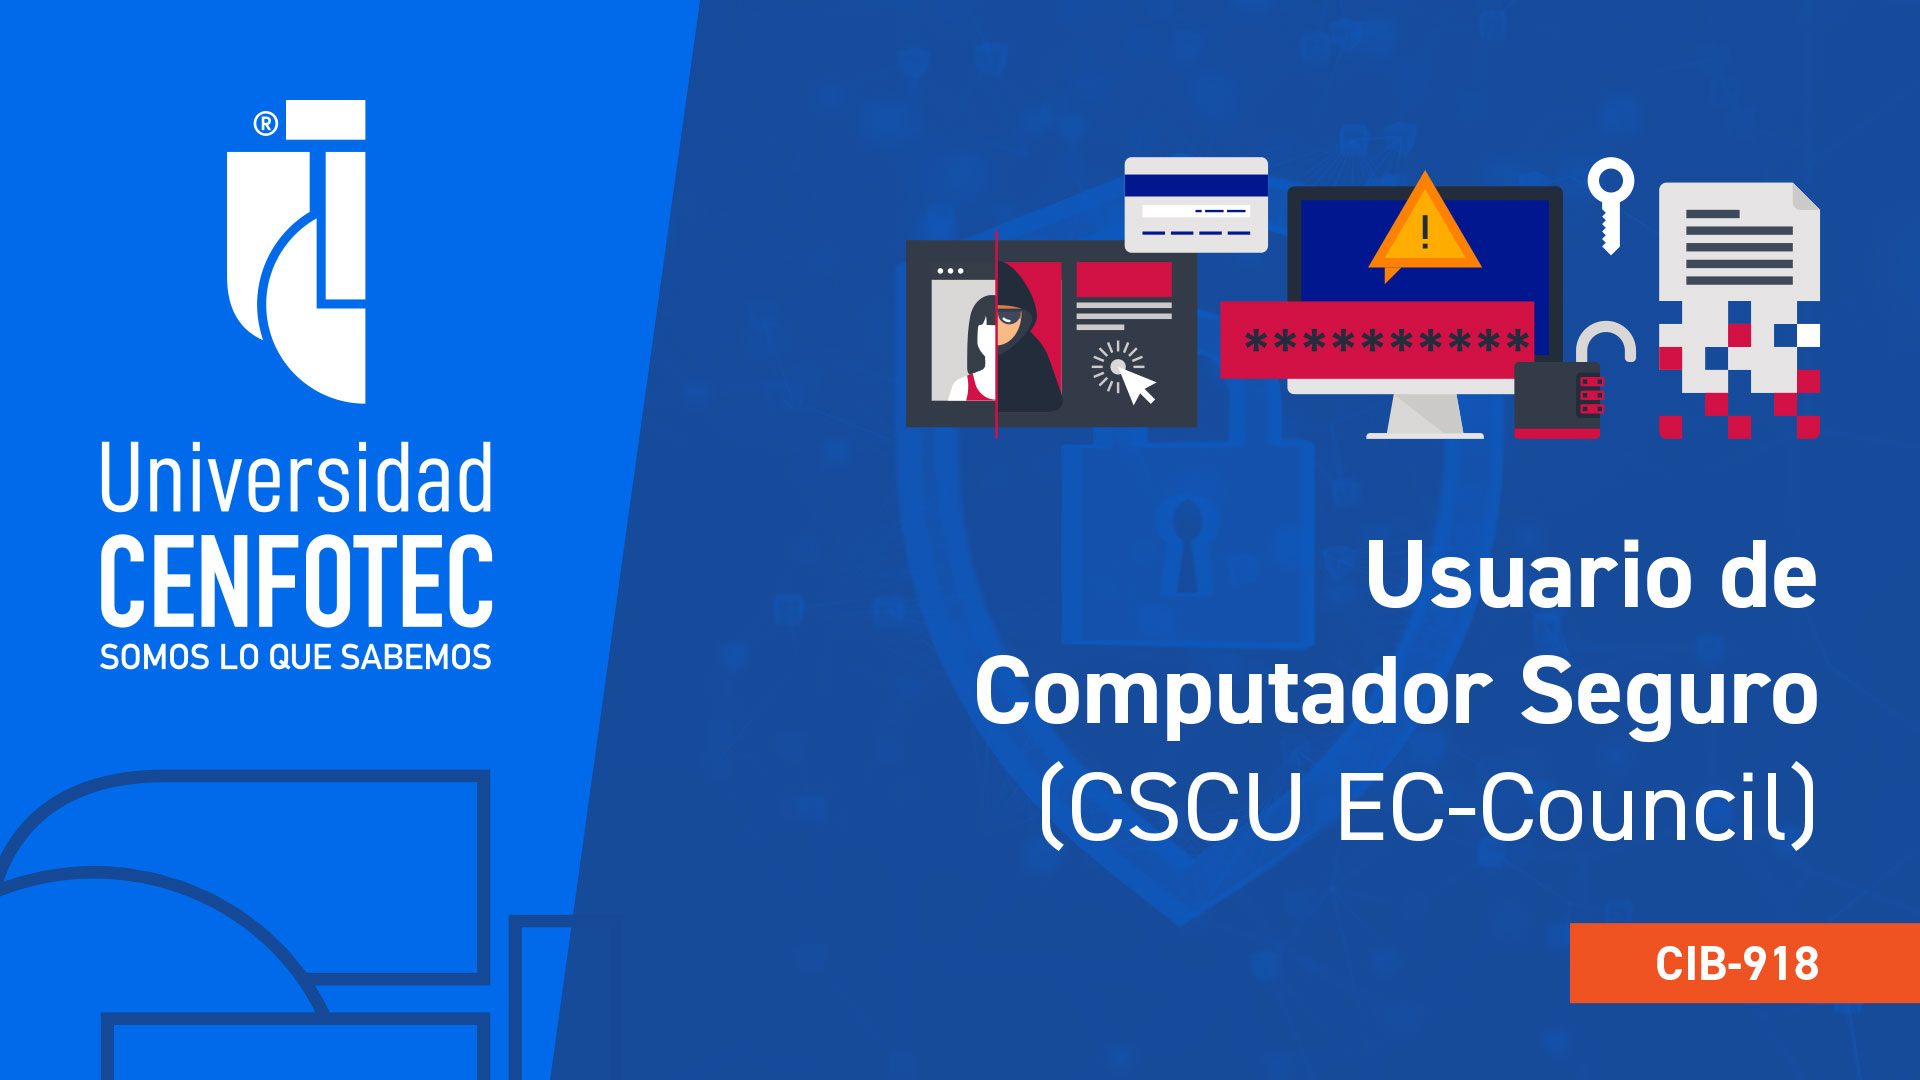 CIB-918 Usuario de Computador Seguro (CSCU EC-Council)